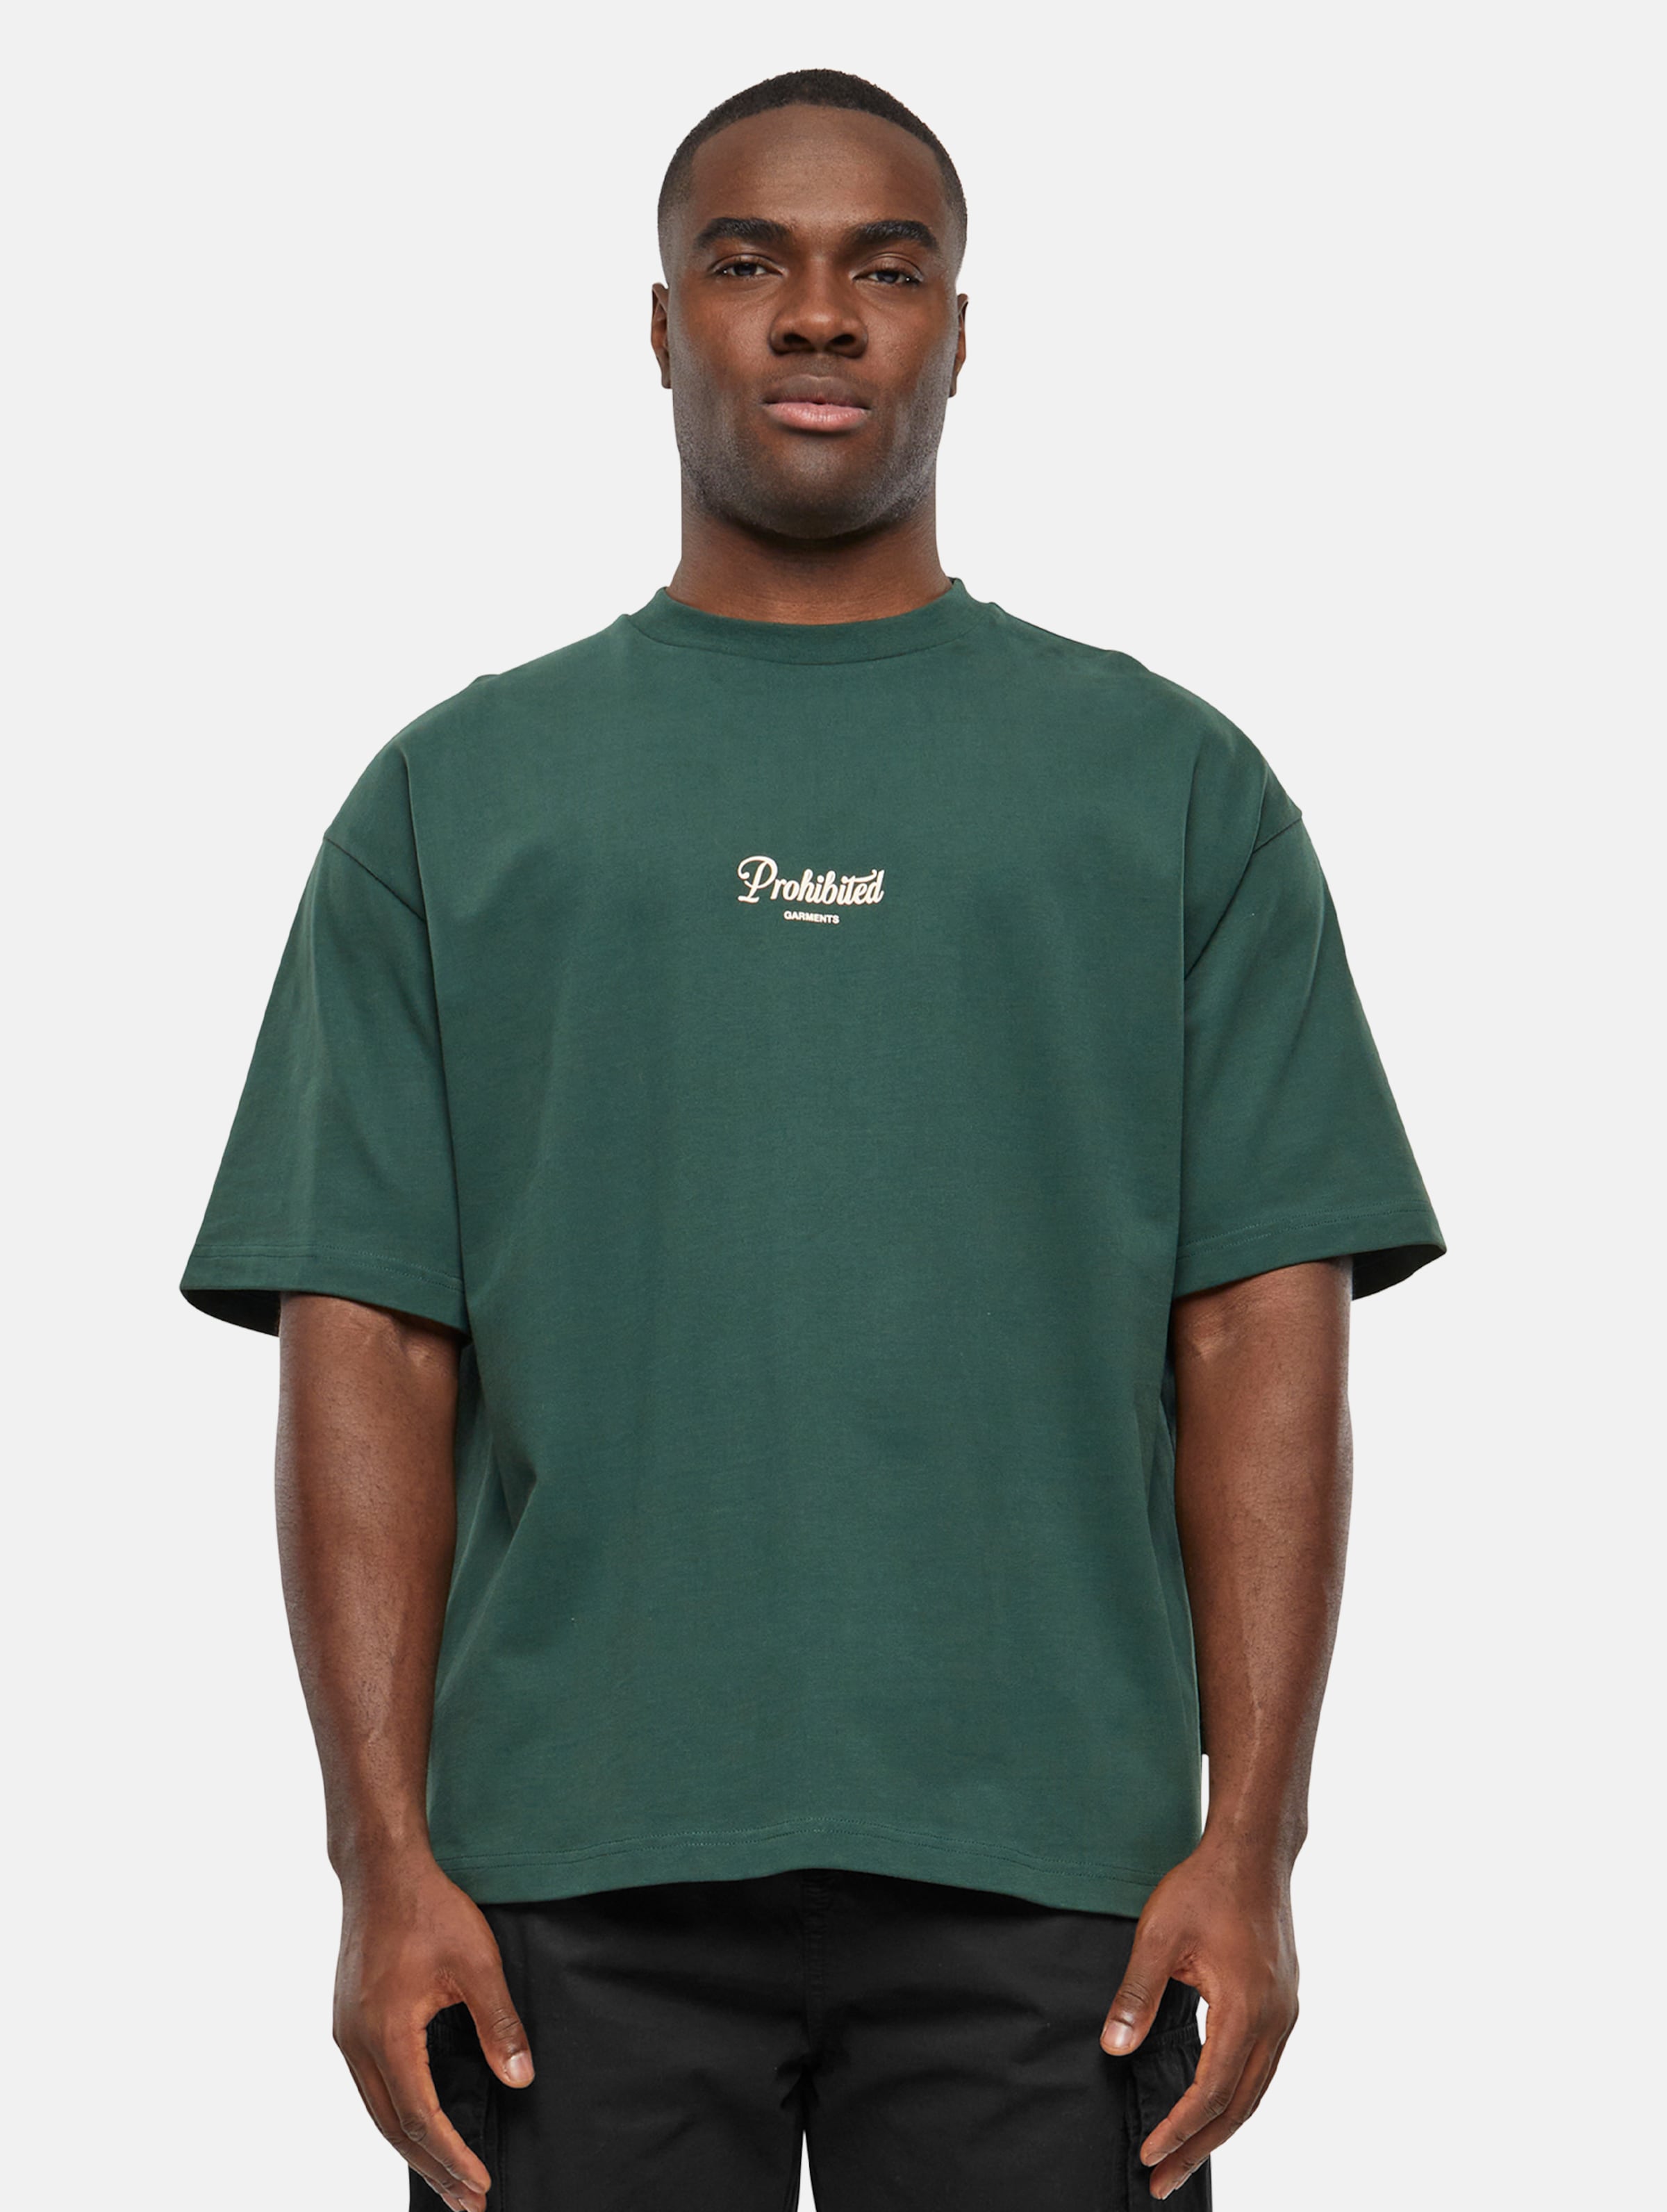 Prohibited PB Garment T Shirts Männer,Unisex op kleur groen, Maat XXL